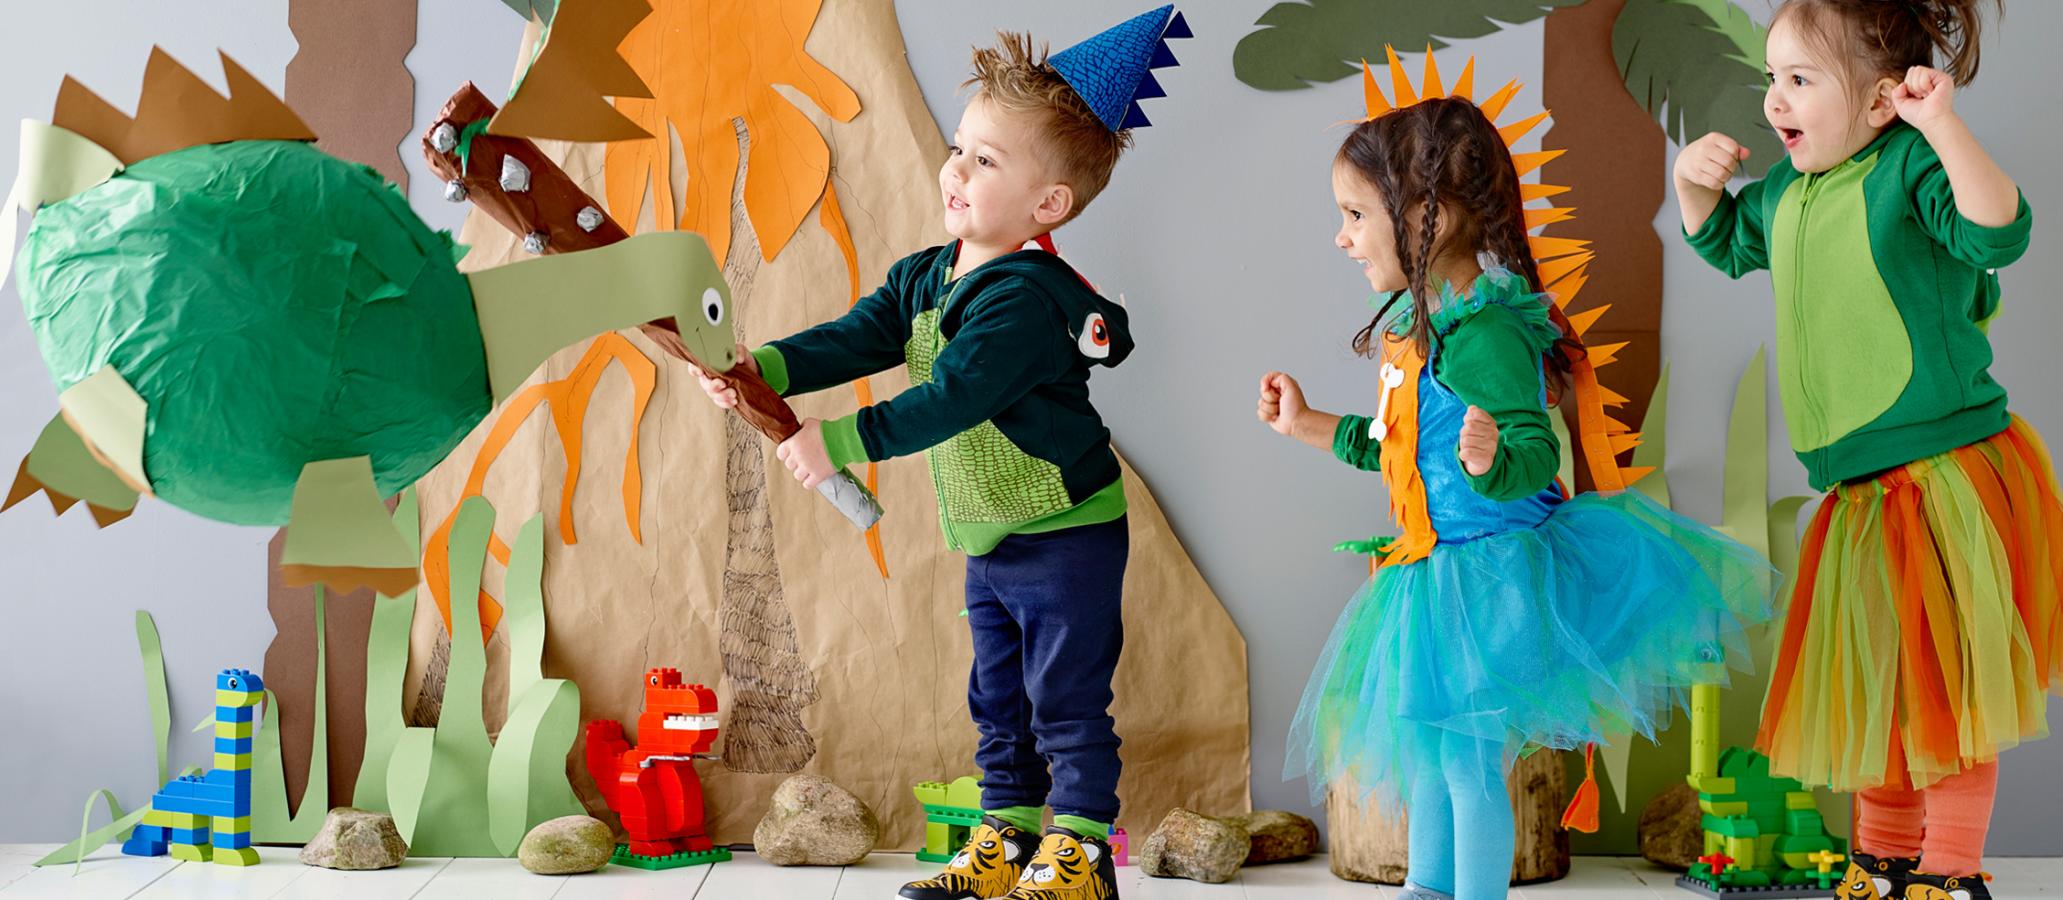 Динозавры играют дети. Вечеринка в стиле динозавров. Фотозона вэ стиле динозавров. Вечеринка динозавров для детей. Фотосессия в стиле динозавров.